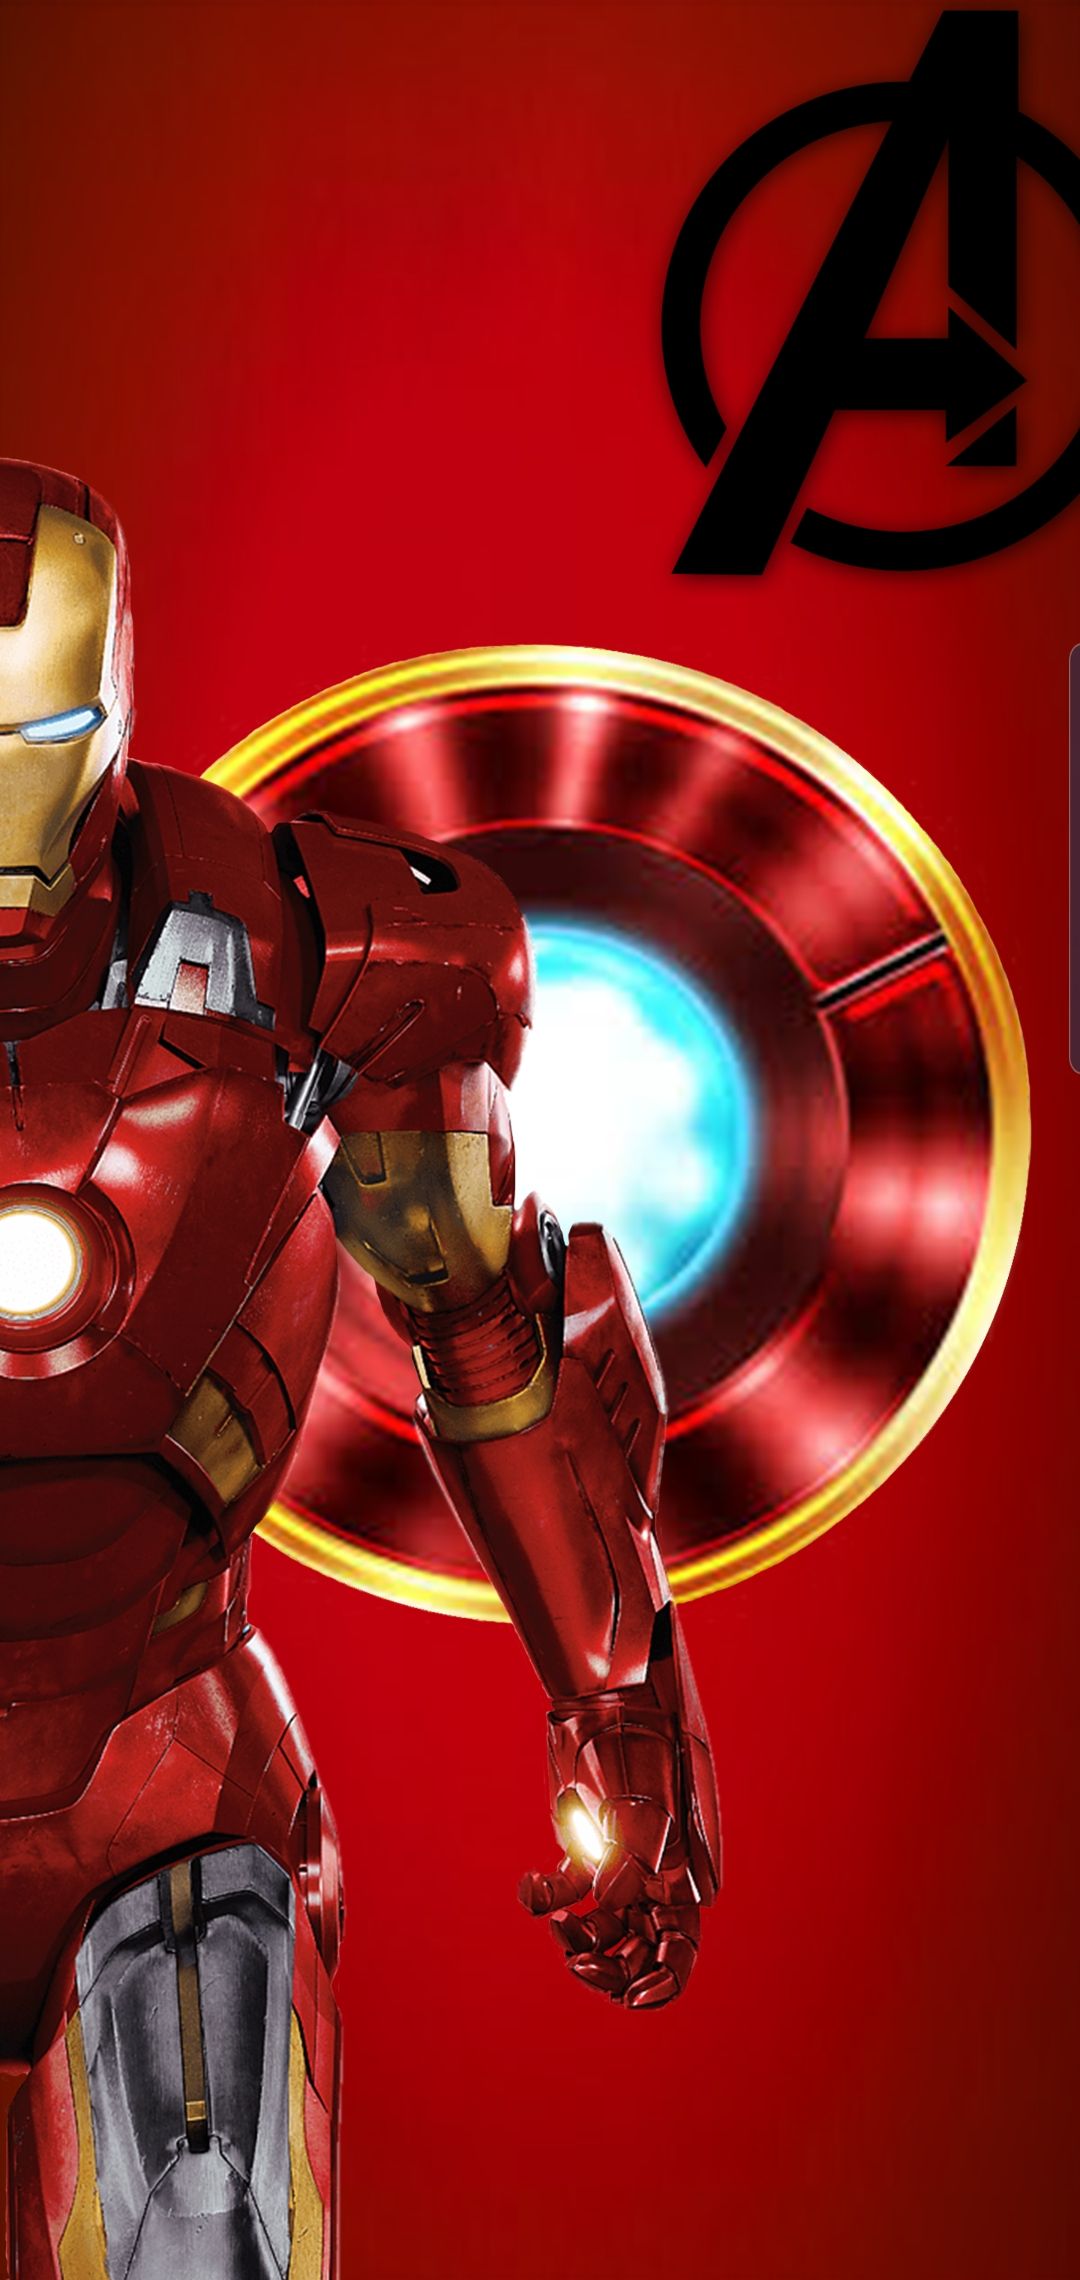 Fondo de pantalla de Iron Man que hice: S10wallpapers